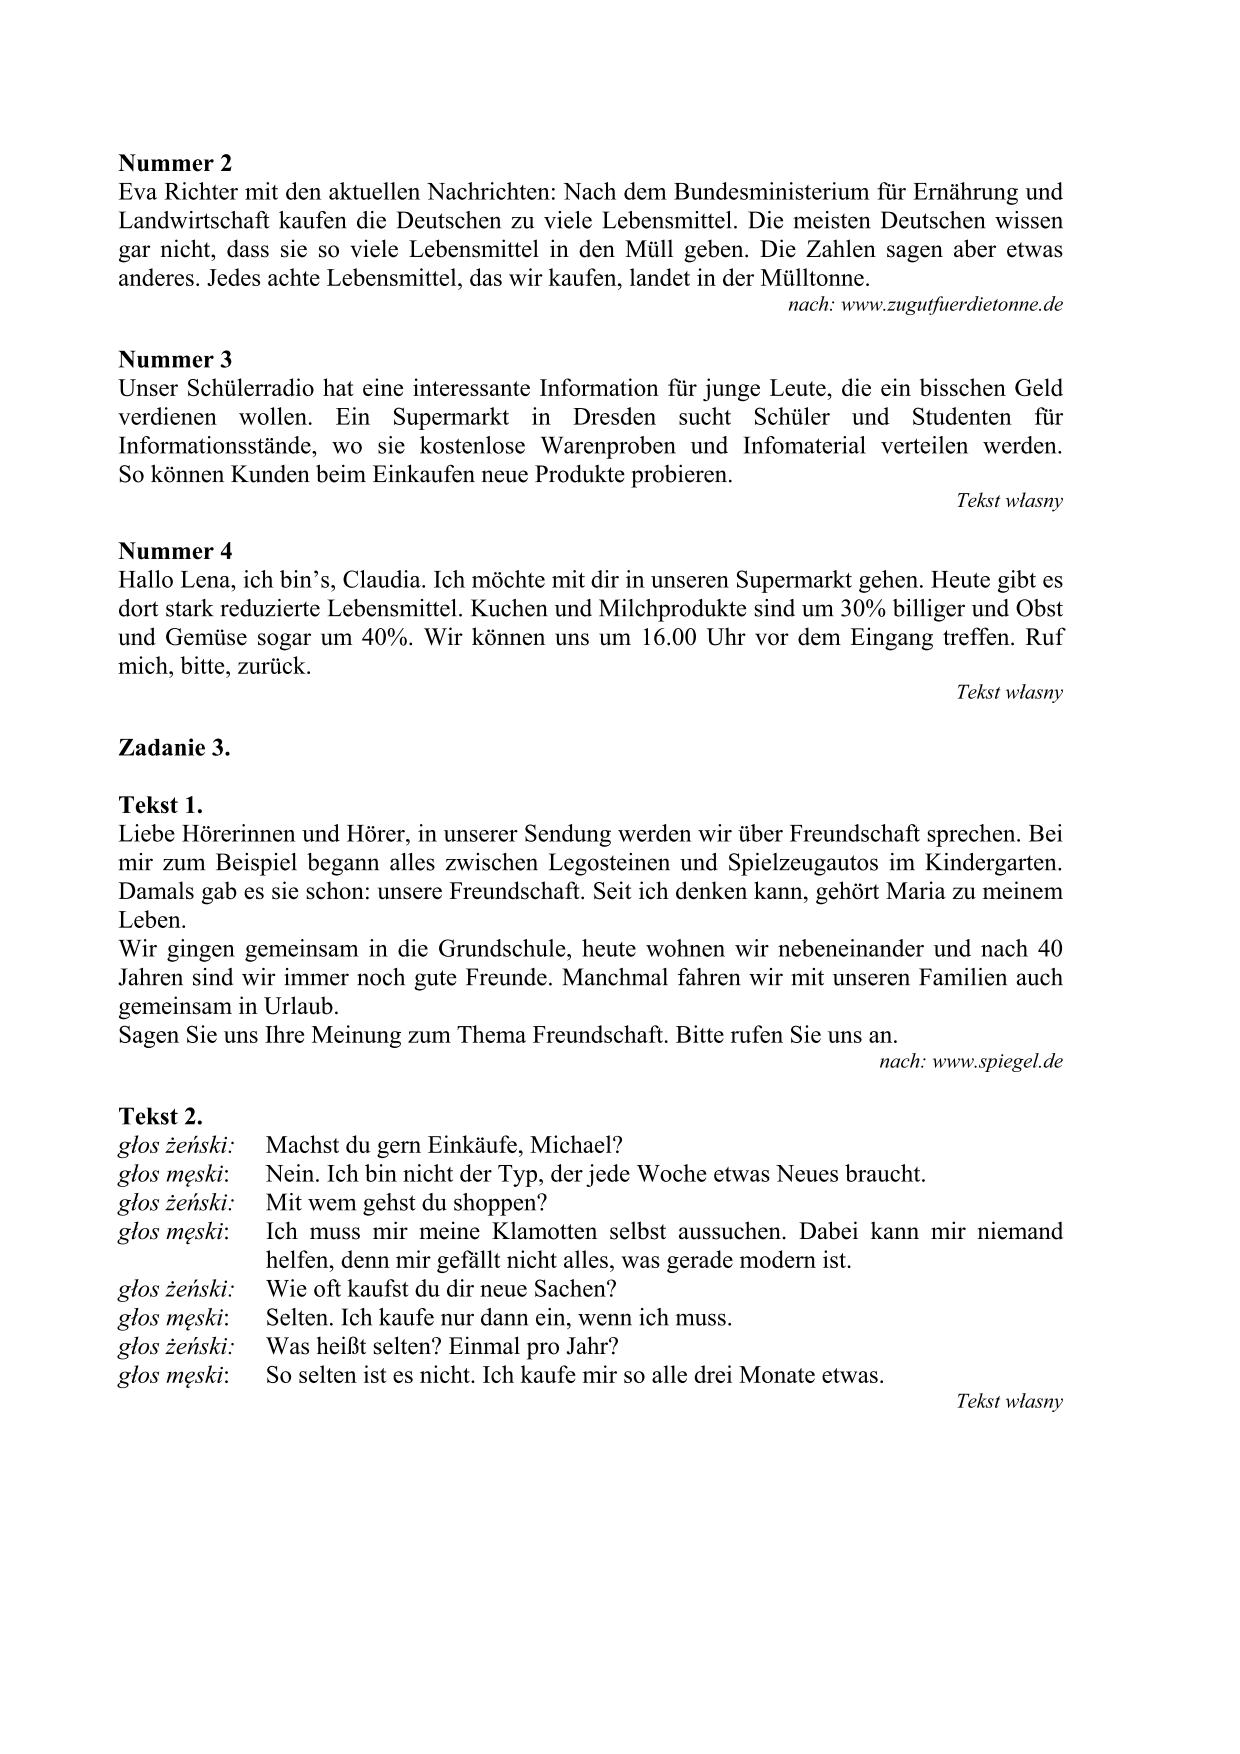 transkrypcja-jezyk-niemiecki-poziom-podstawowy-matura-2015-2